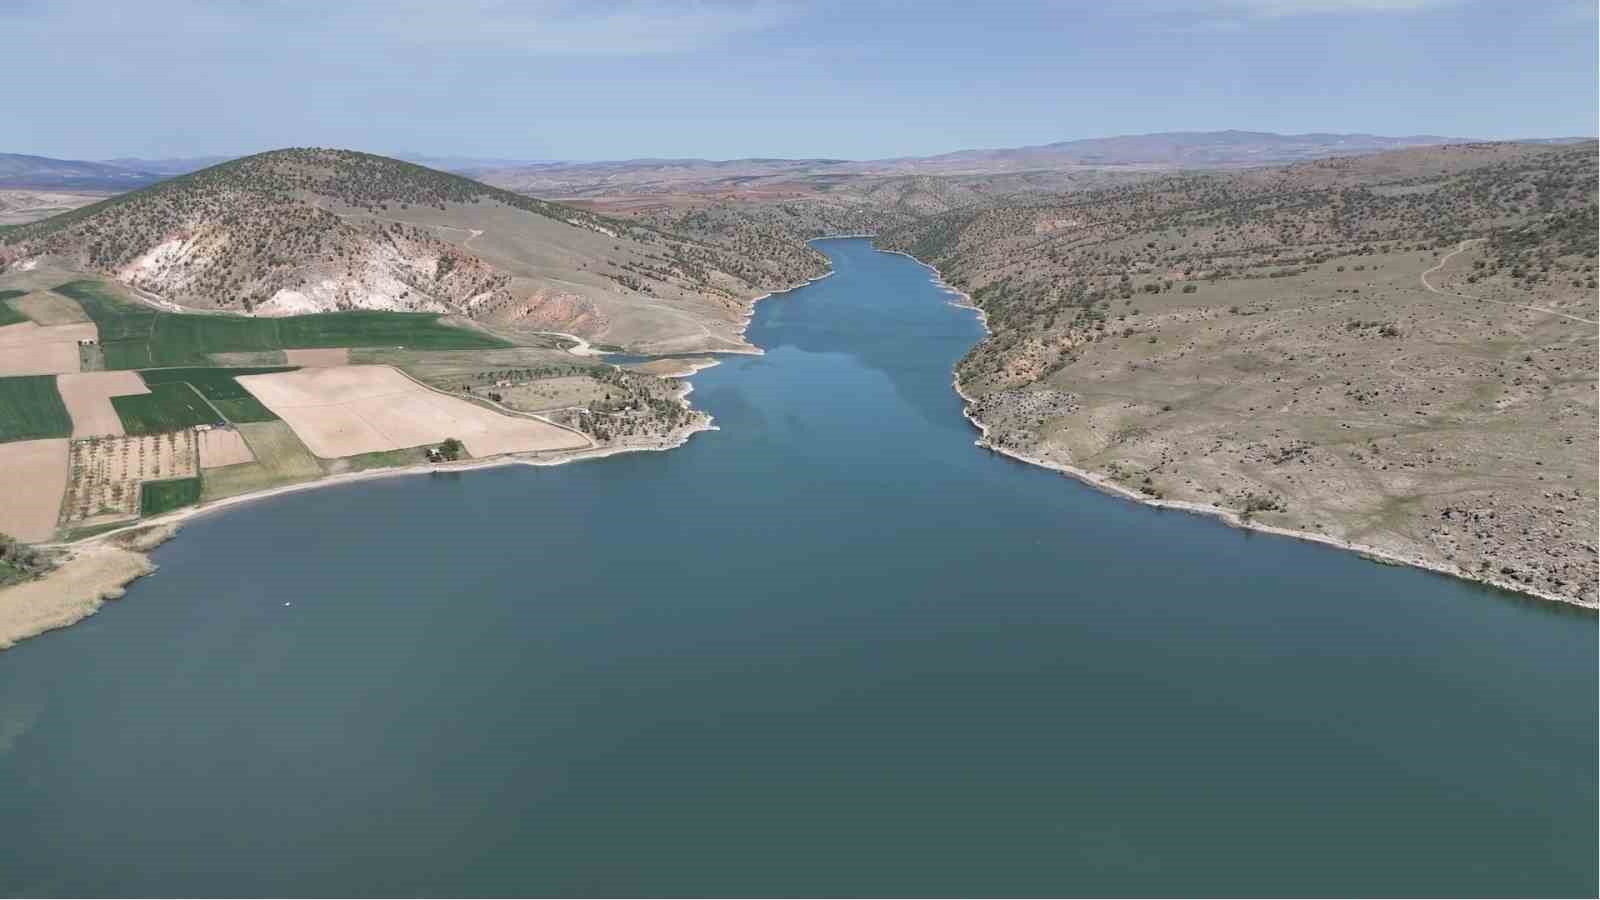 kuraklığa karşı yeni tedbir, barajlarda tasarruf dönemi: 35 milyon metreküp su tutuldu